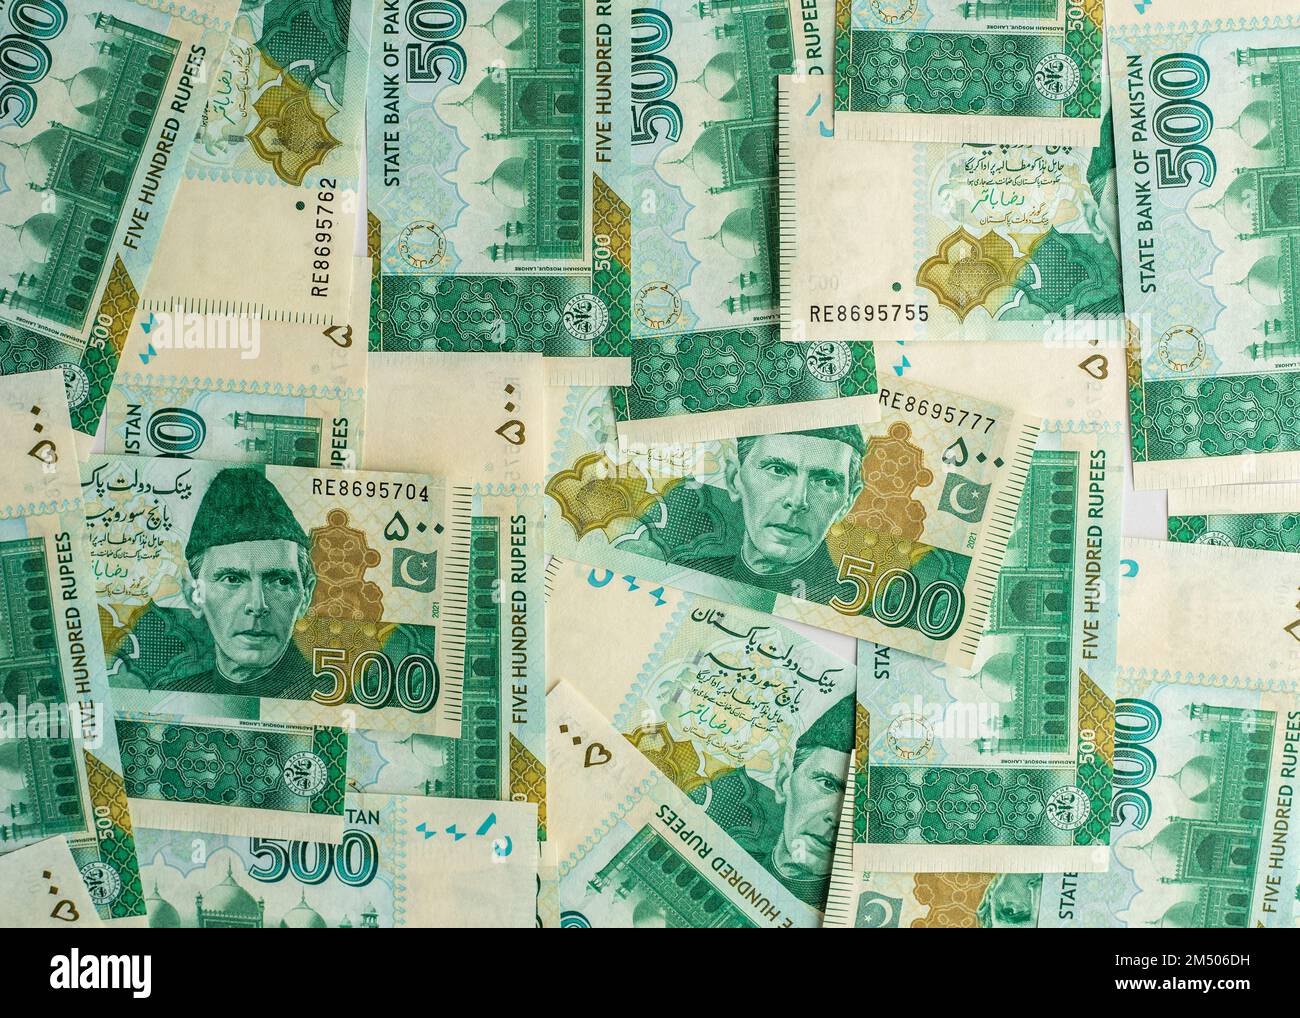 Pakistanische Banknoten von 500 Rupien, isoliert auf weißem Hintergrund Stockfoto